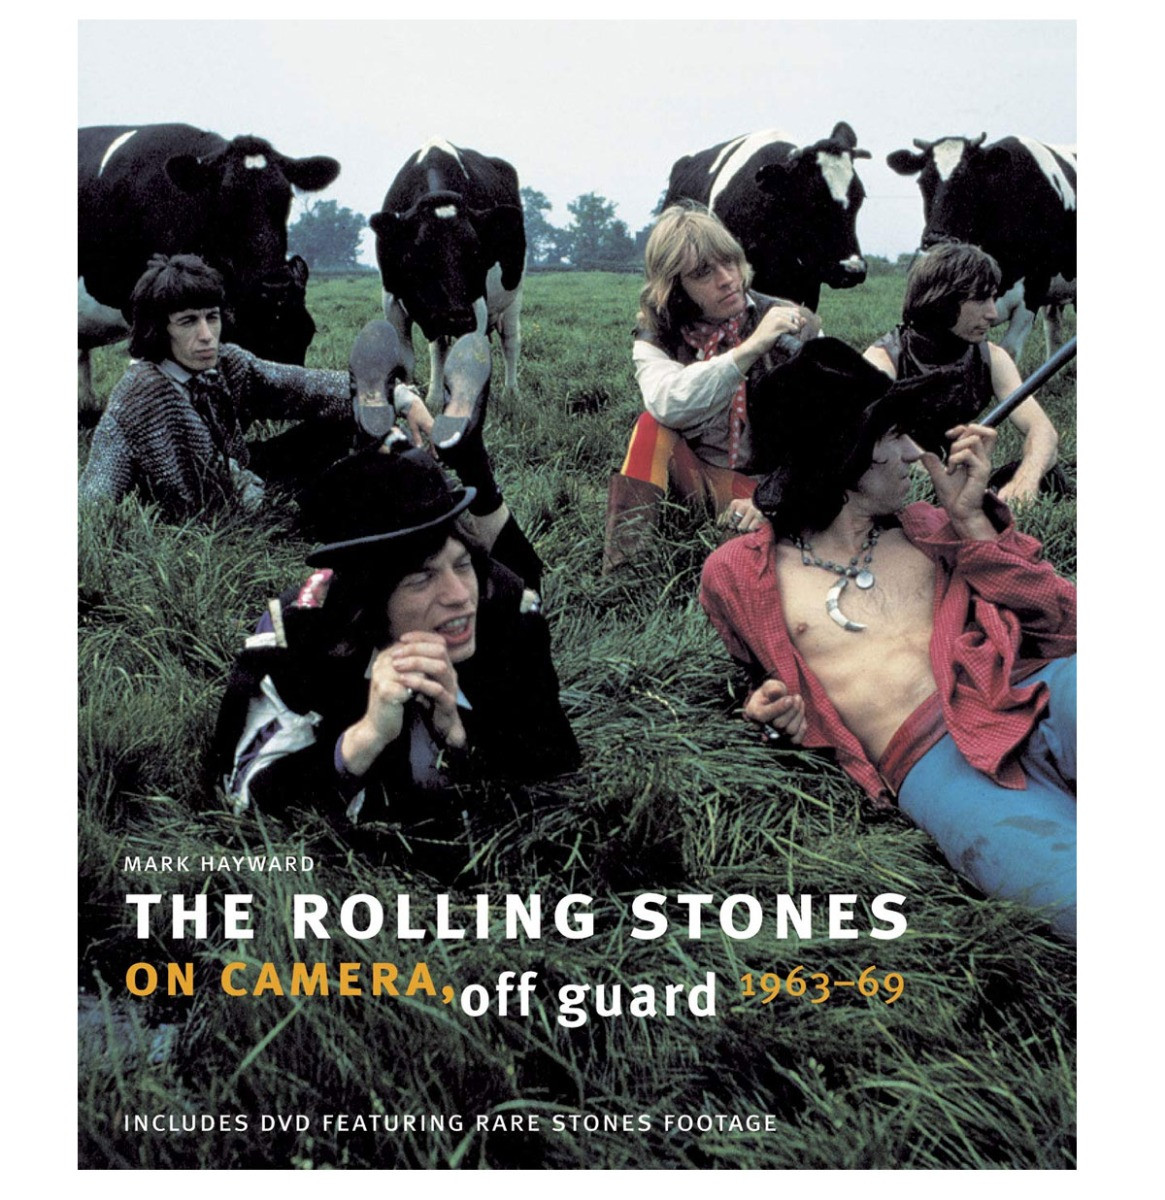 The Rolling Stones - On Camera, Off Guard 1963 -1969 Hardcover Boek - GESIGNEERD door auteur